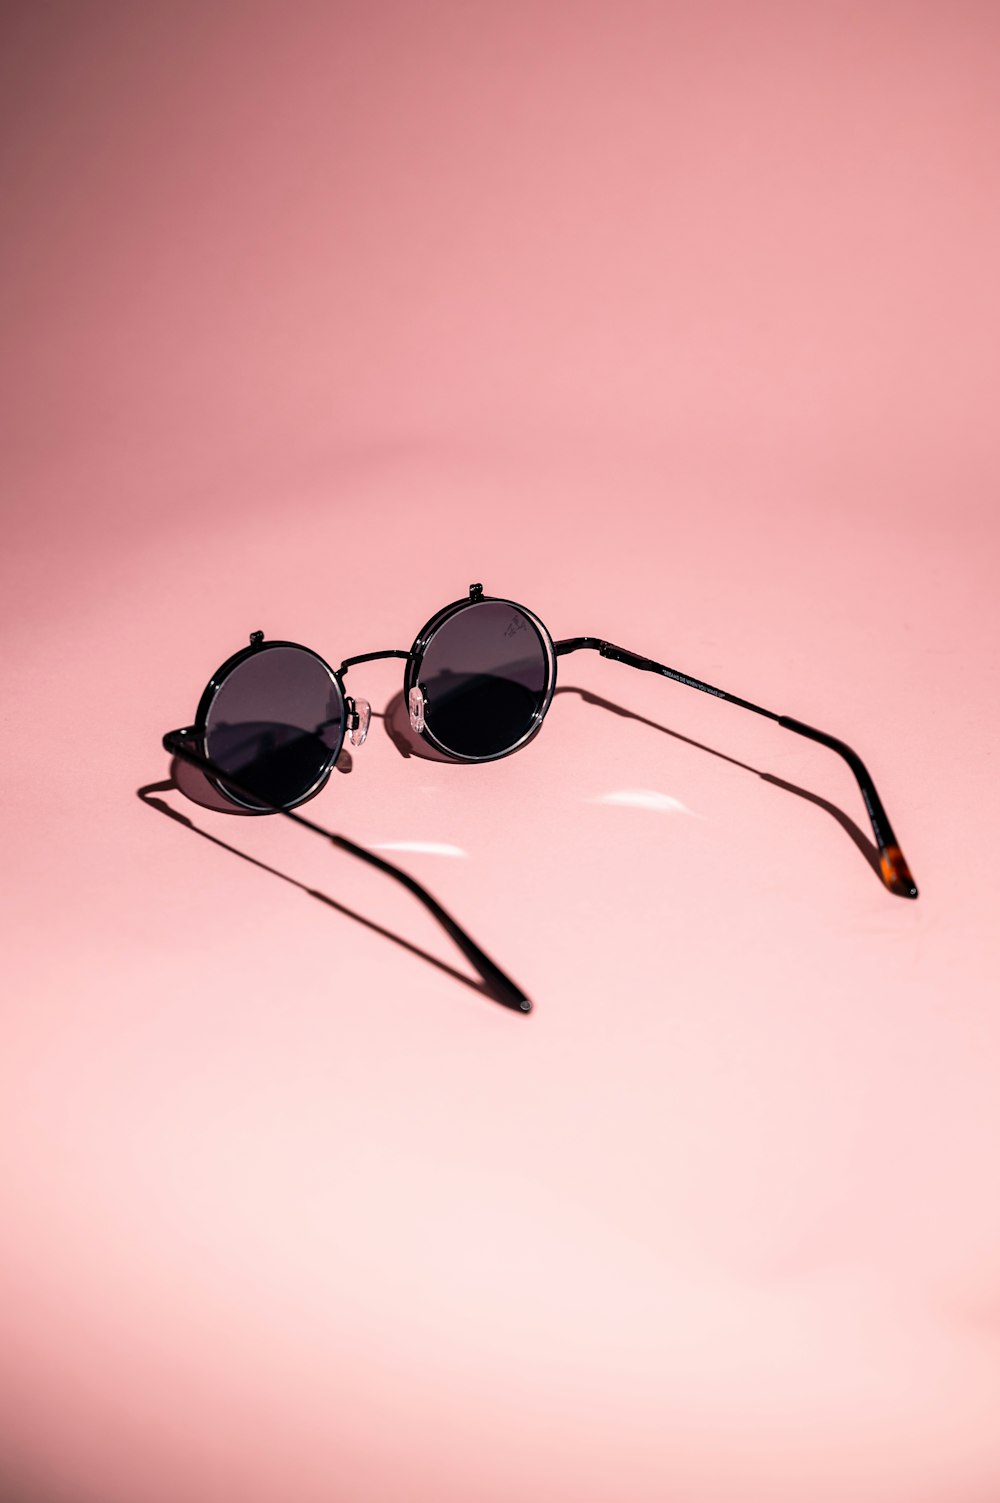 black framed sunglasses on white surface